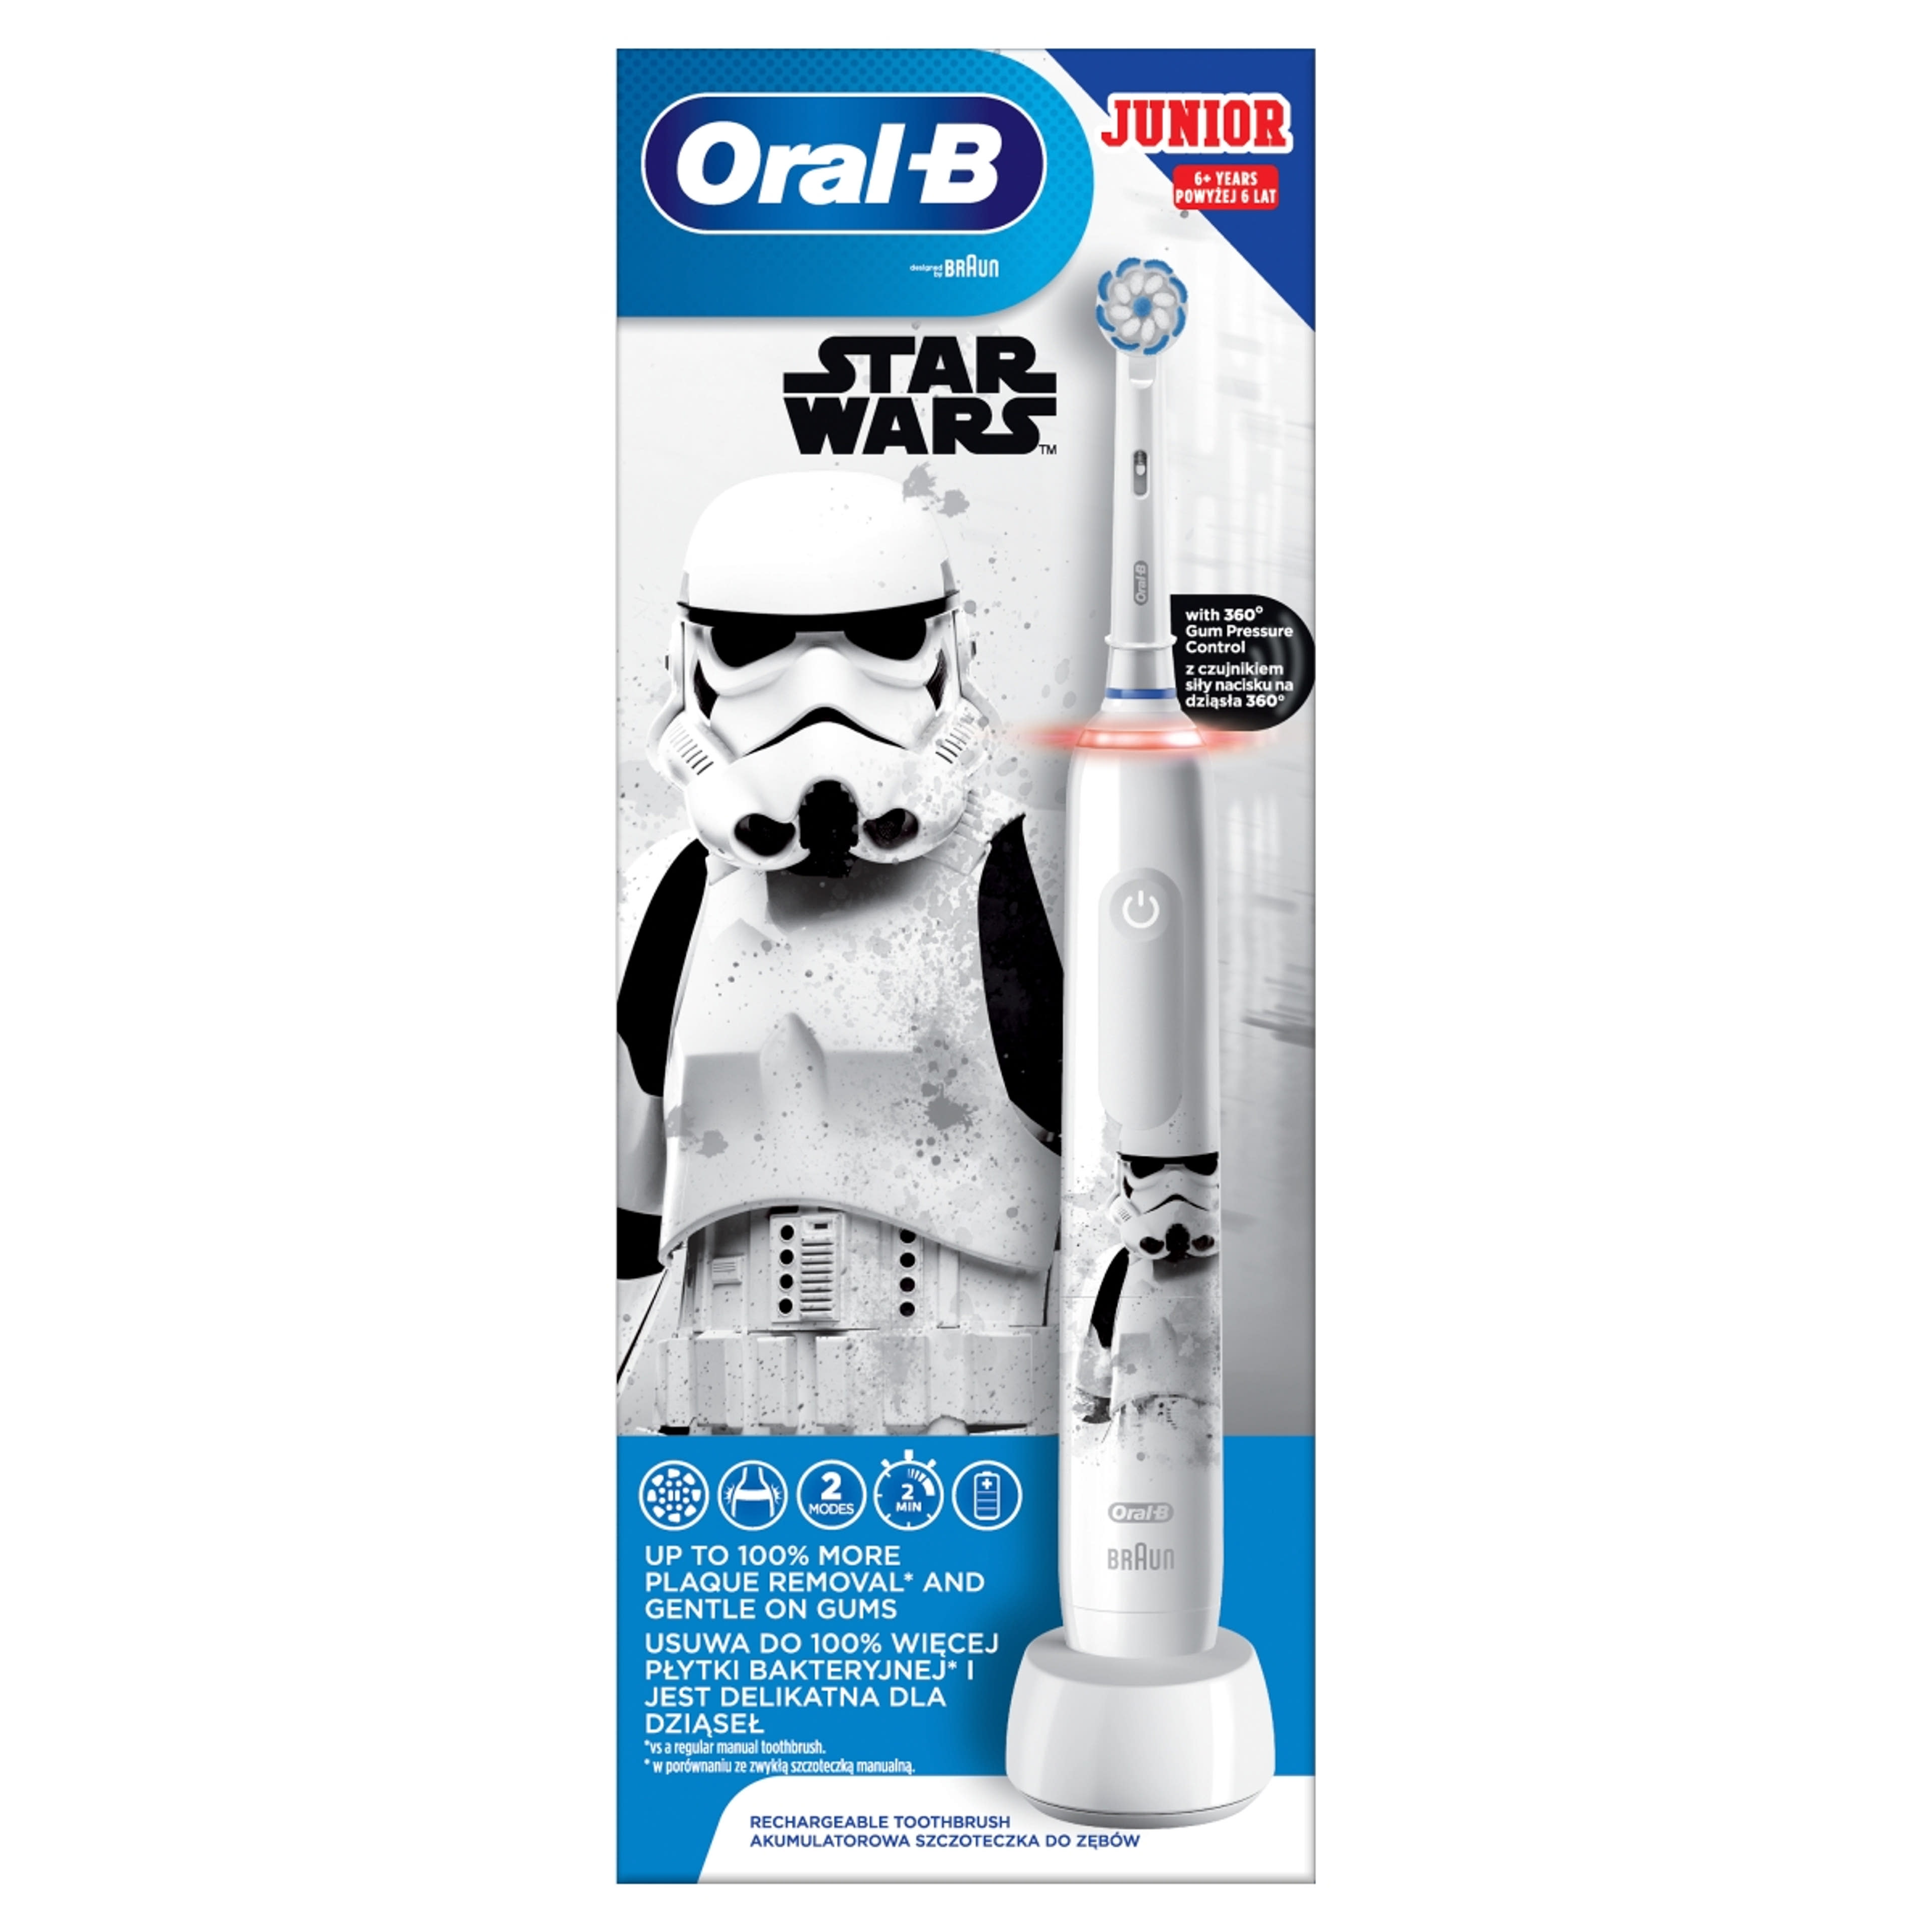 Oral-B Junior Star Wars elektromos fogkefe 6 éves kortól - 1 db-1